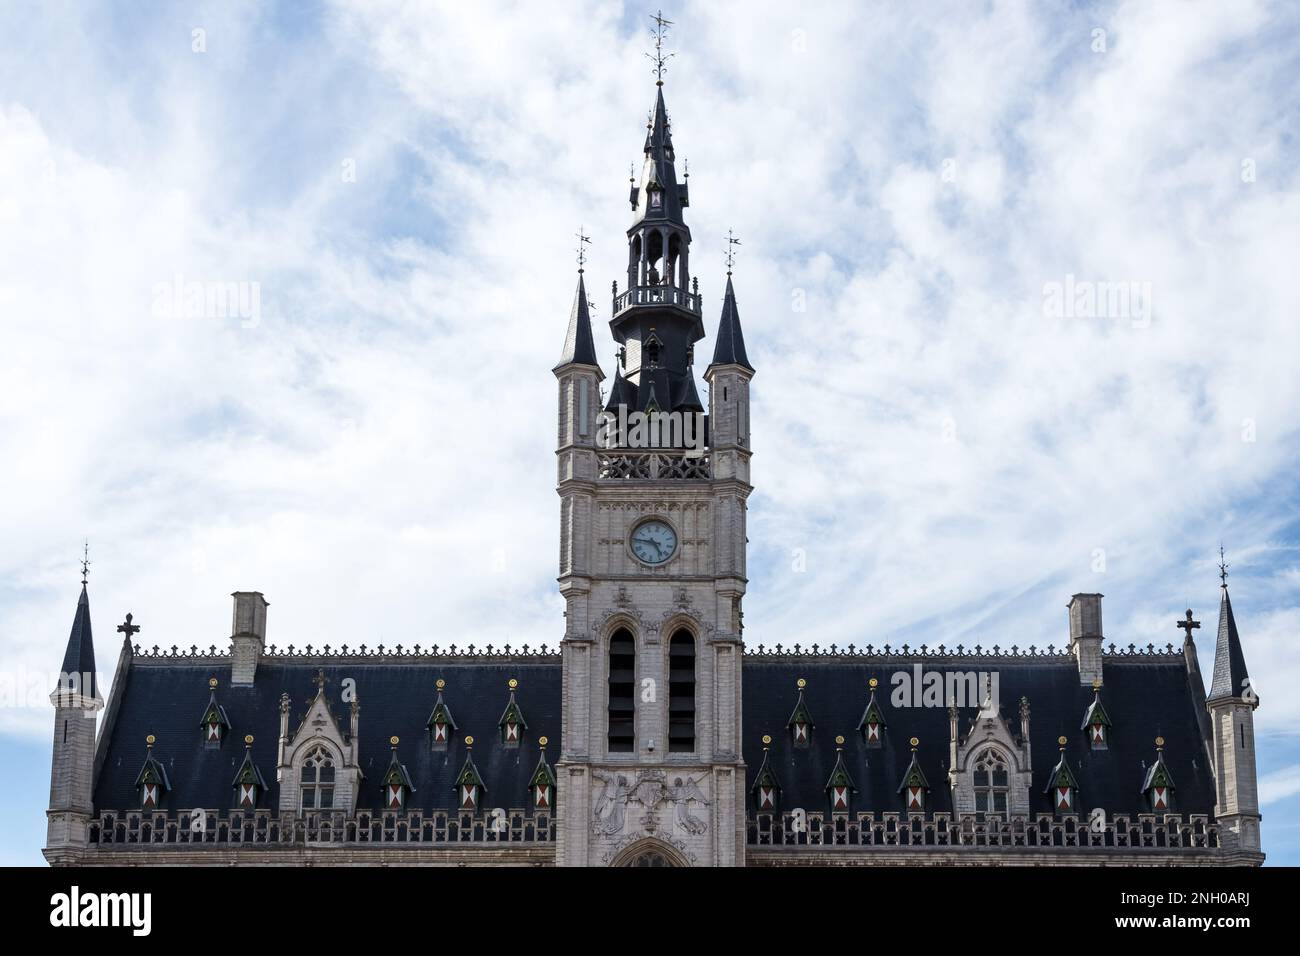 Architektonische Details des Rathauses von Sint-Niklaas, belgische Stadt und Gemeinde in der flämischen Provinz Ostflandern. Stockfoto